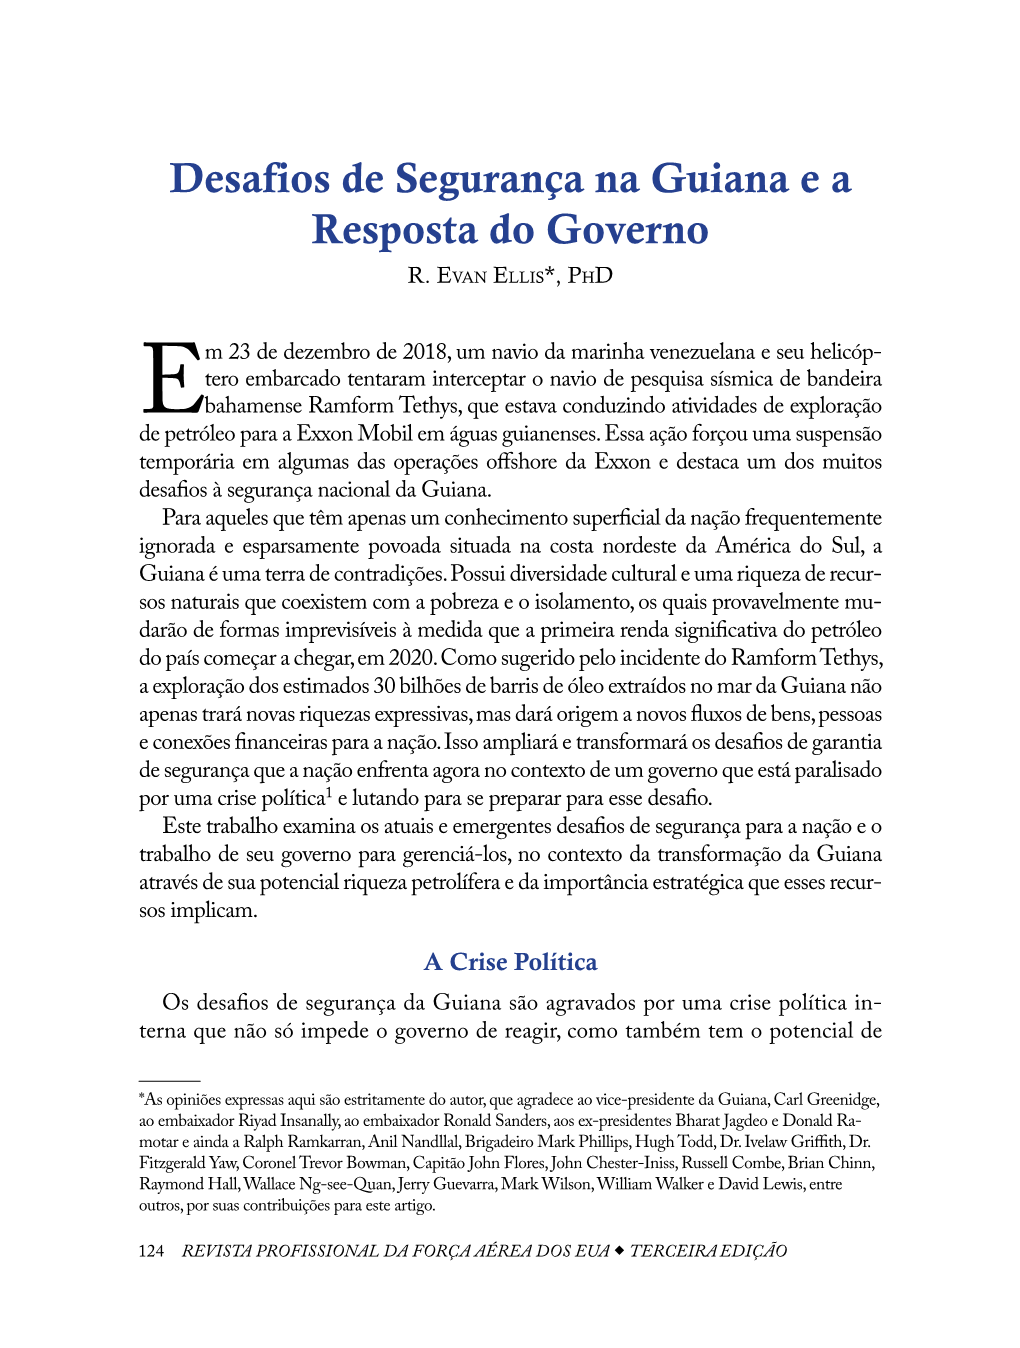 Desafios De Segurança Na Guiana E a Resposta Do Governo R